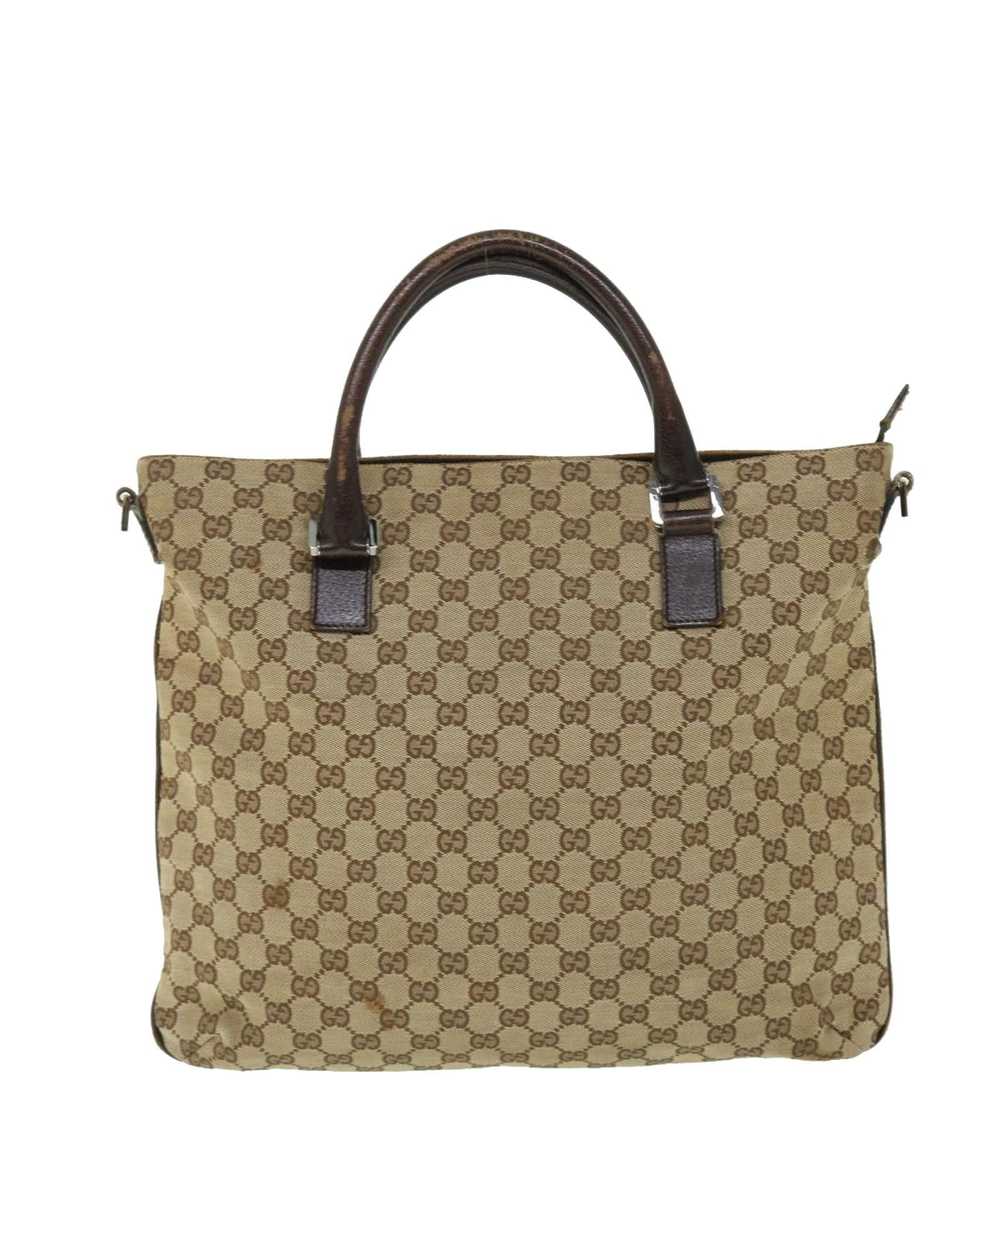 Gucci Beige Canvas Shoulder Bag with GG Design - image 3